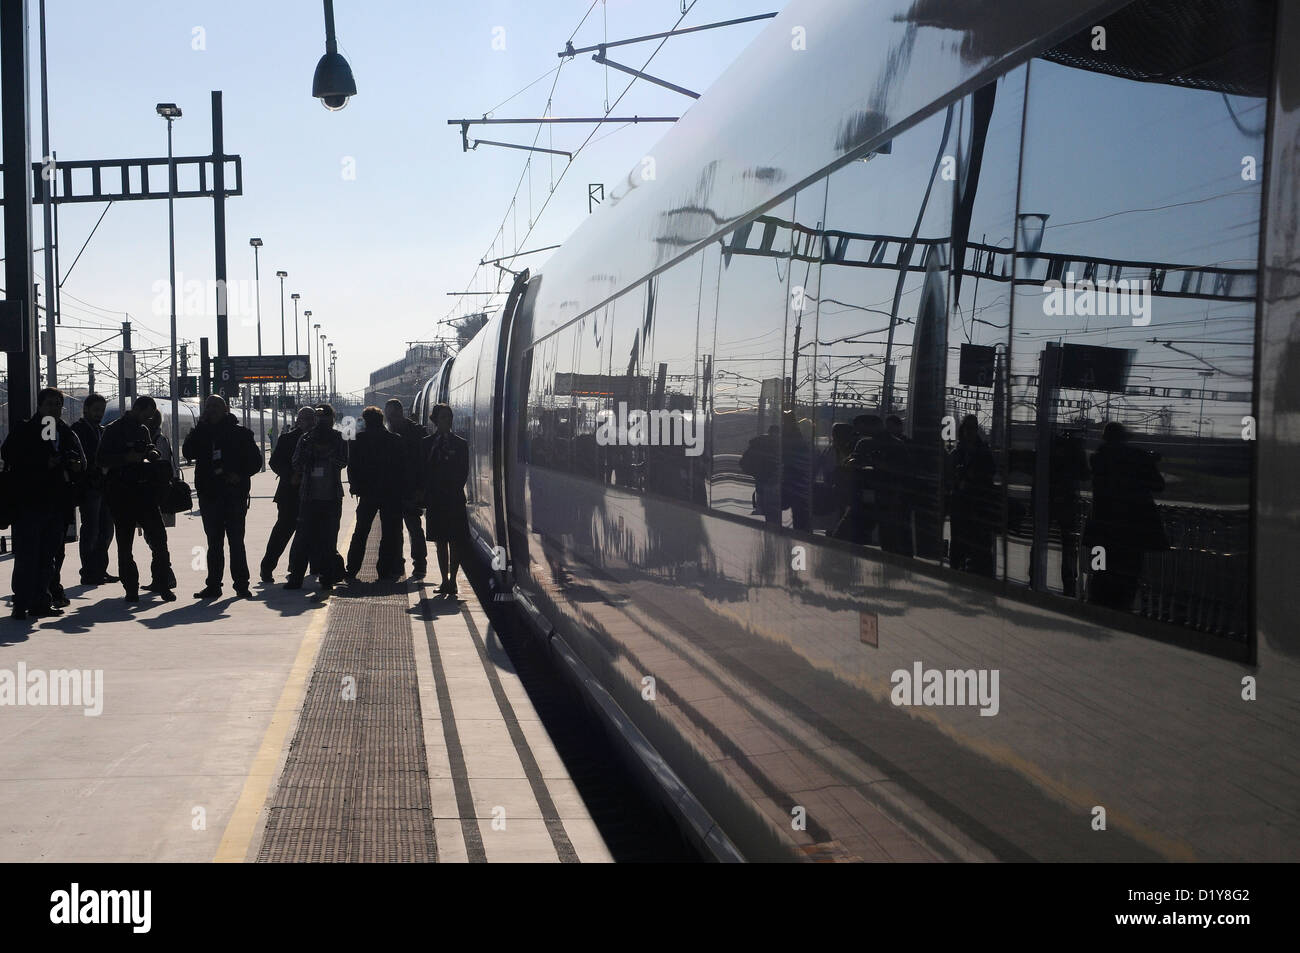 Estación de tren España abre enlace ferroviario de alta velocidad entre Barcelona y Figueras Barcelona-Figueres línea ferroviaria de alta velocidad (AVE) Foto de stock